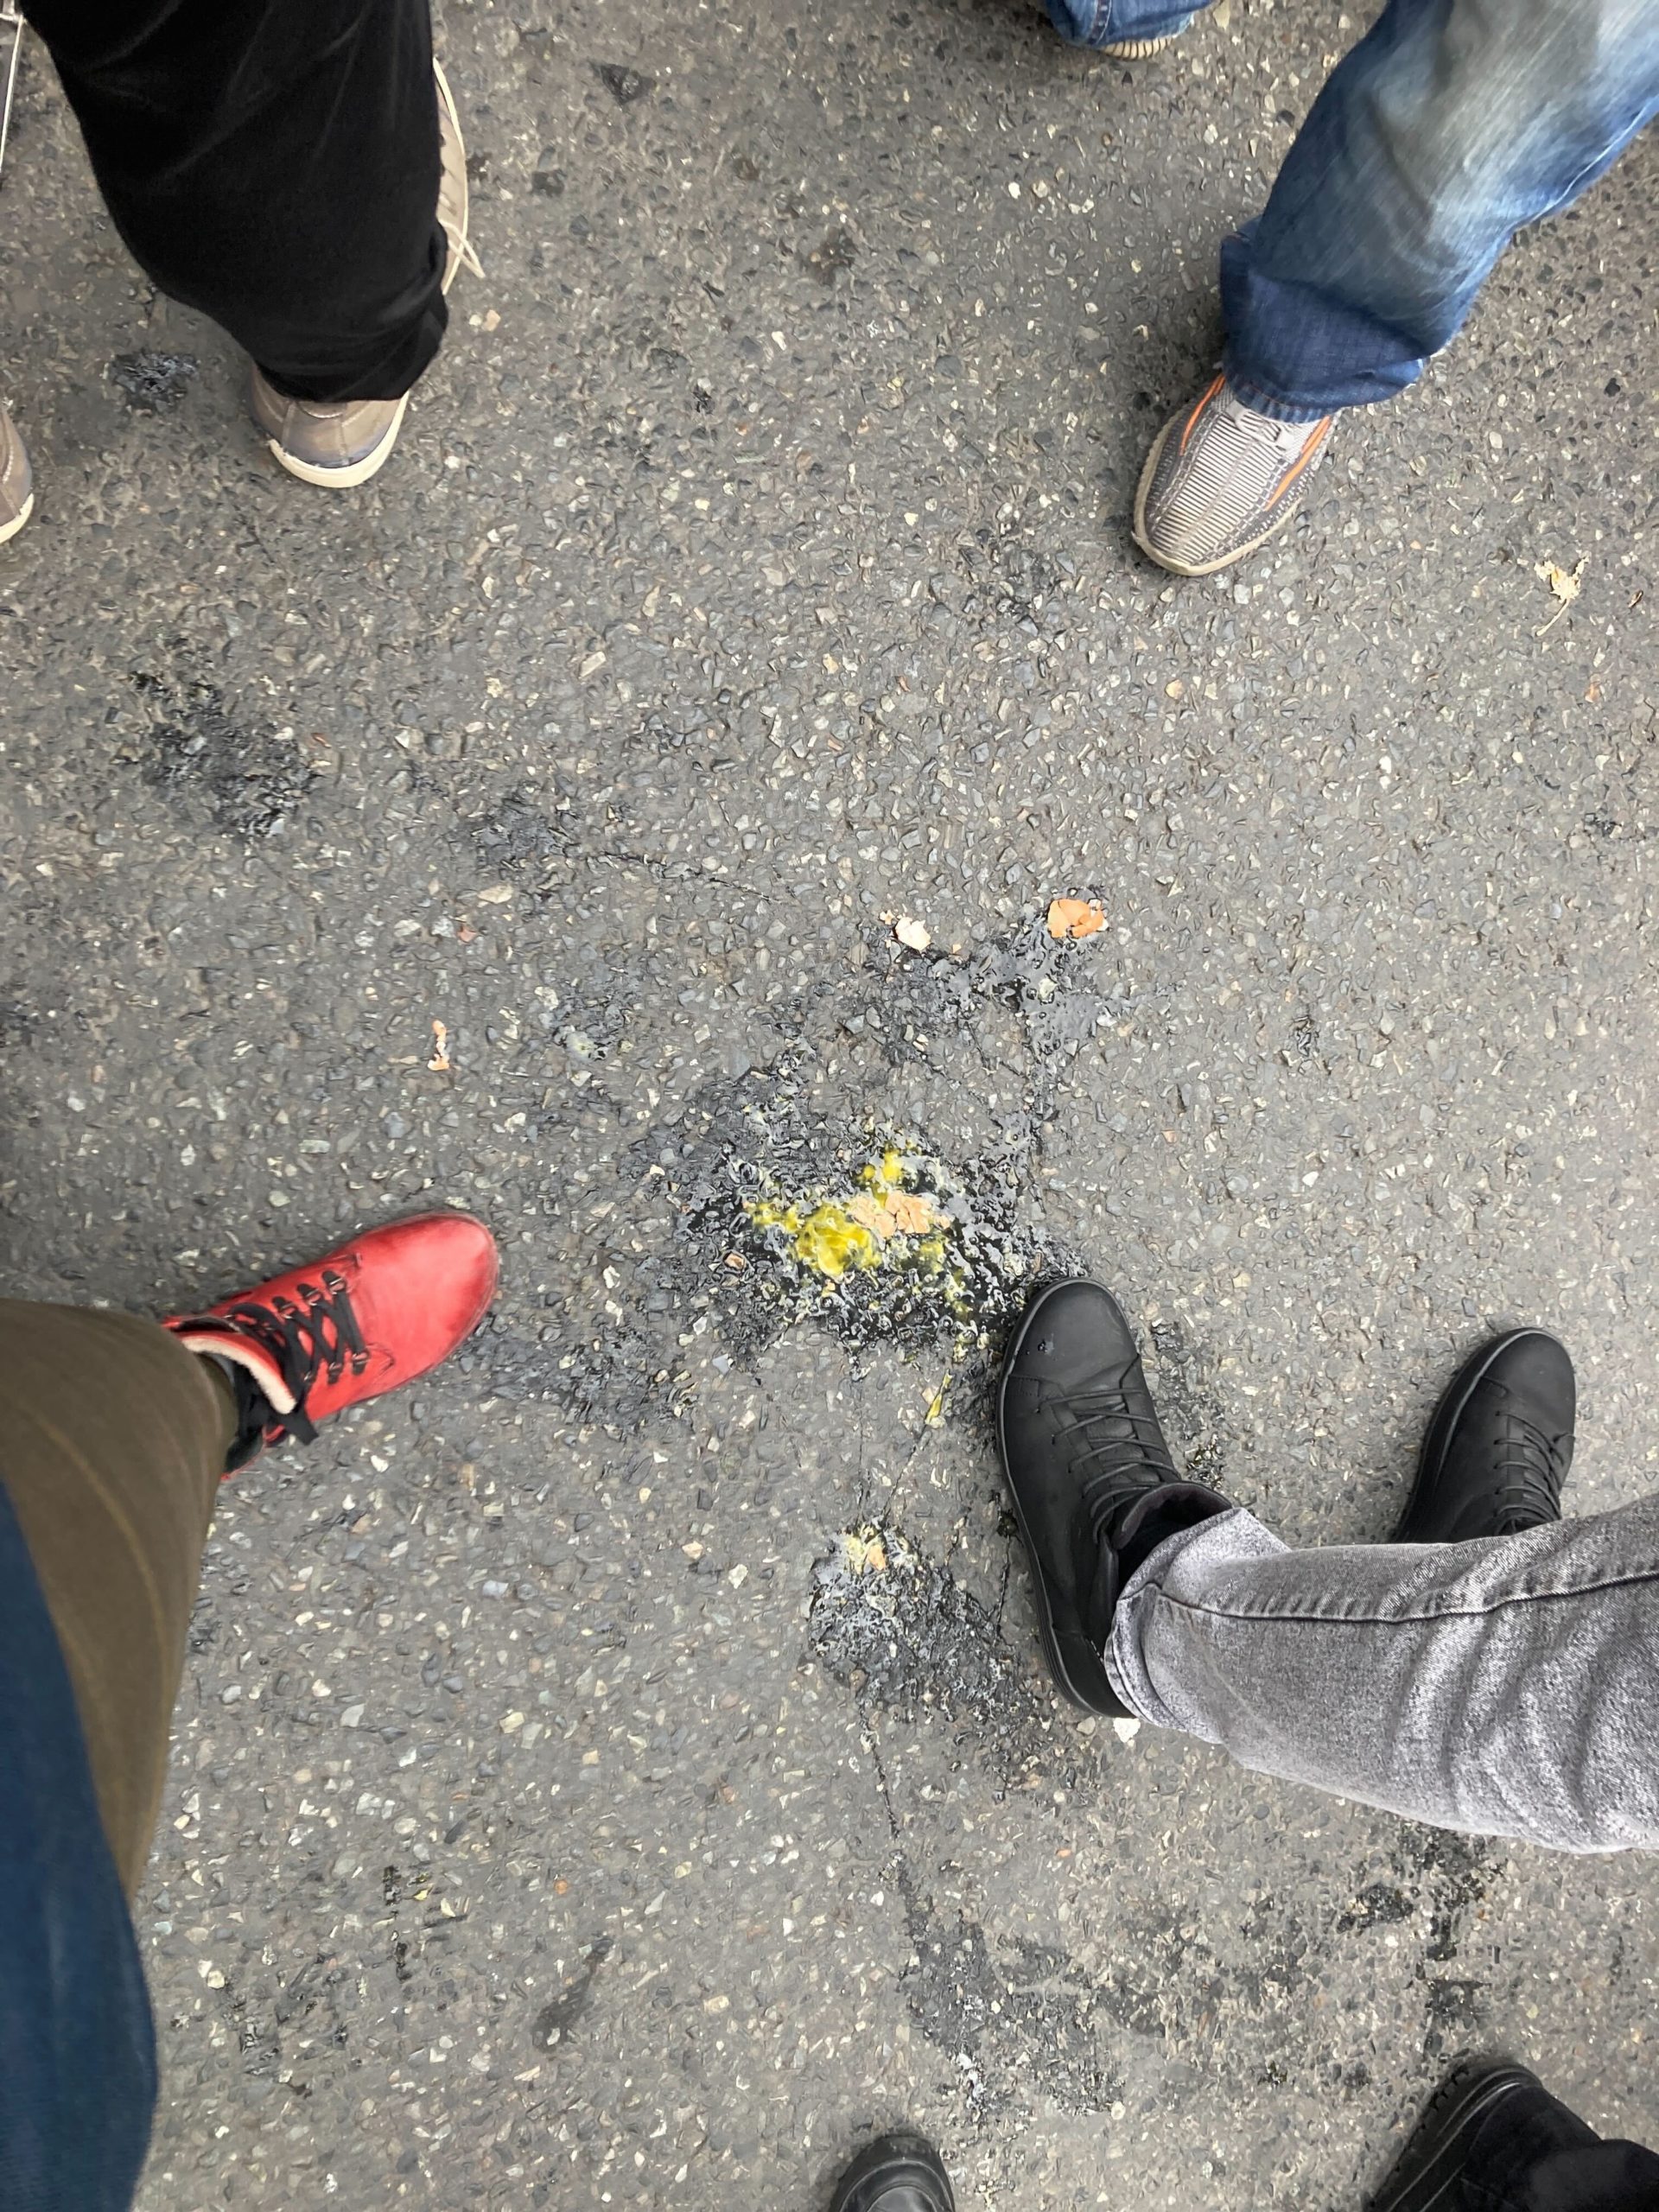 (ФОТО) В Кишиневе сторонники Шора забросали полицию яйцами